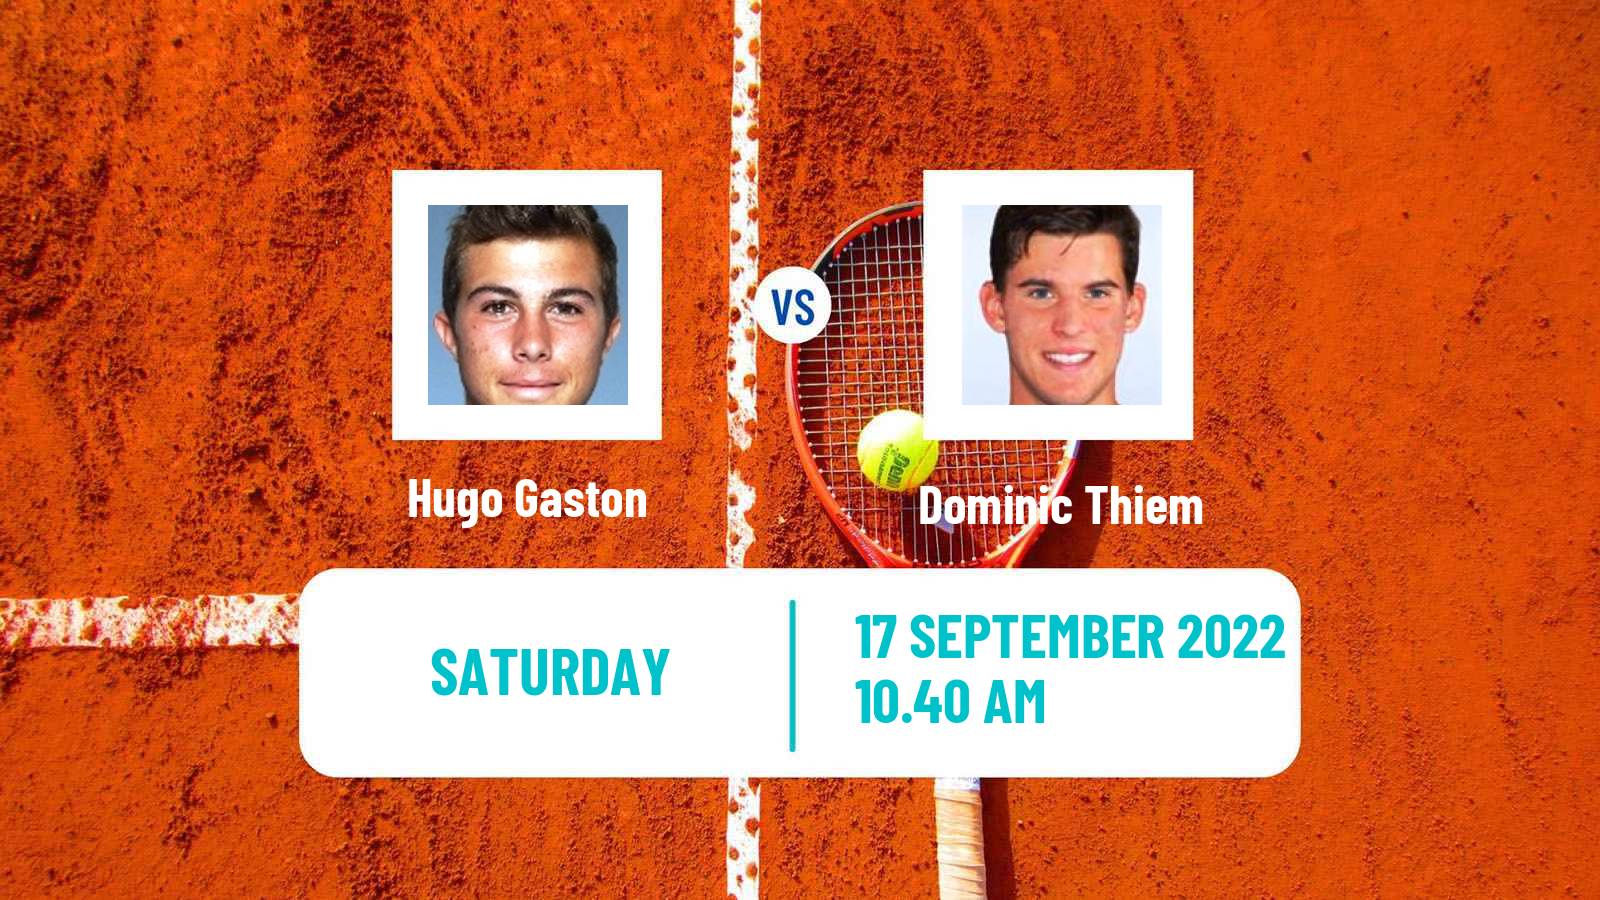 Tennis ATP Challenger Hugo Gaston - Dominic Thiem